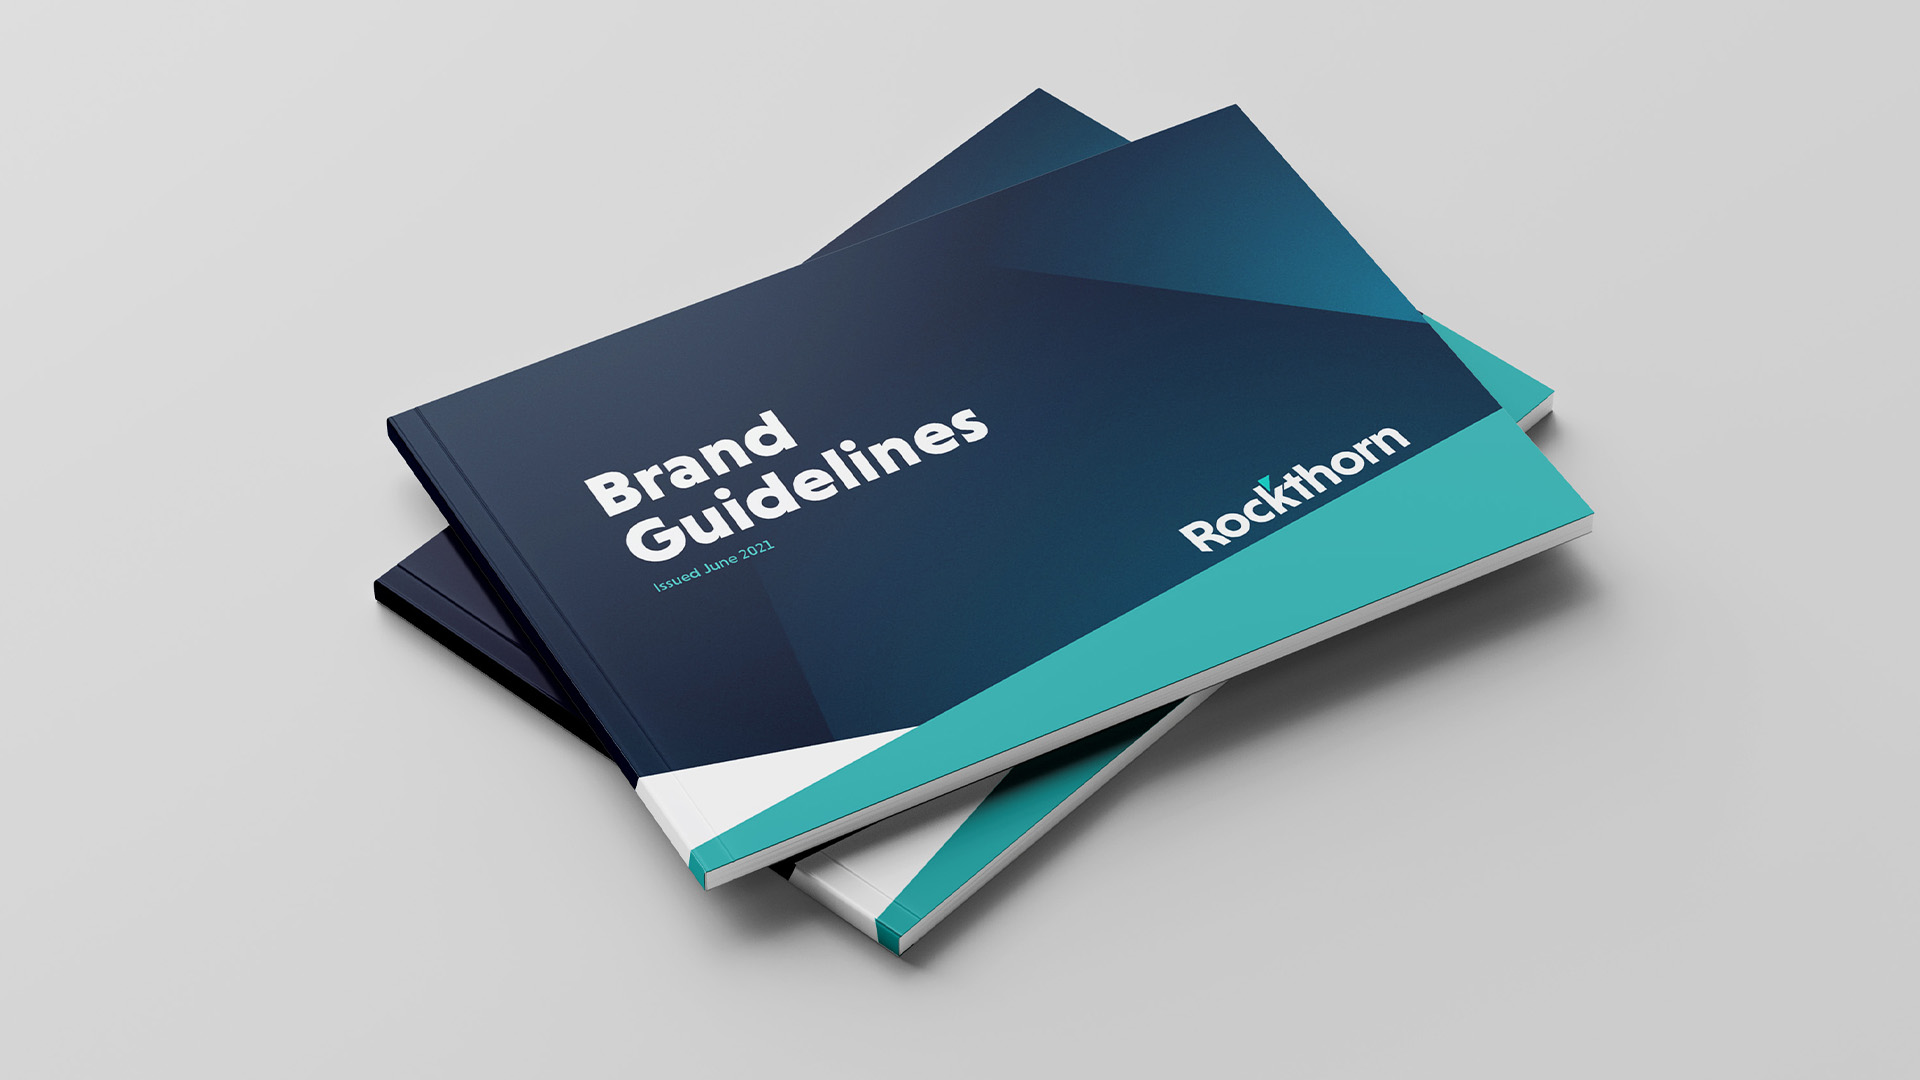 Rockthorn brand guidelines